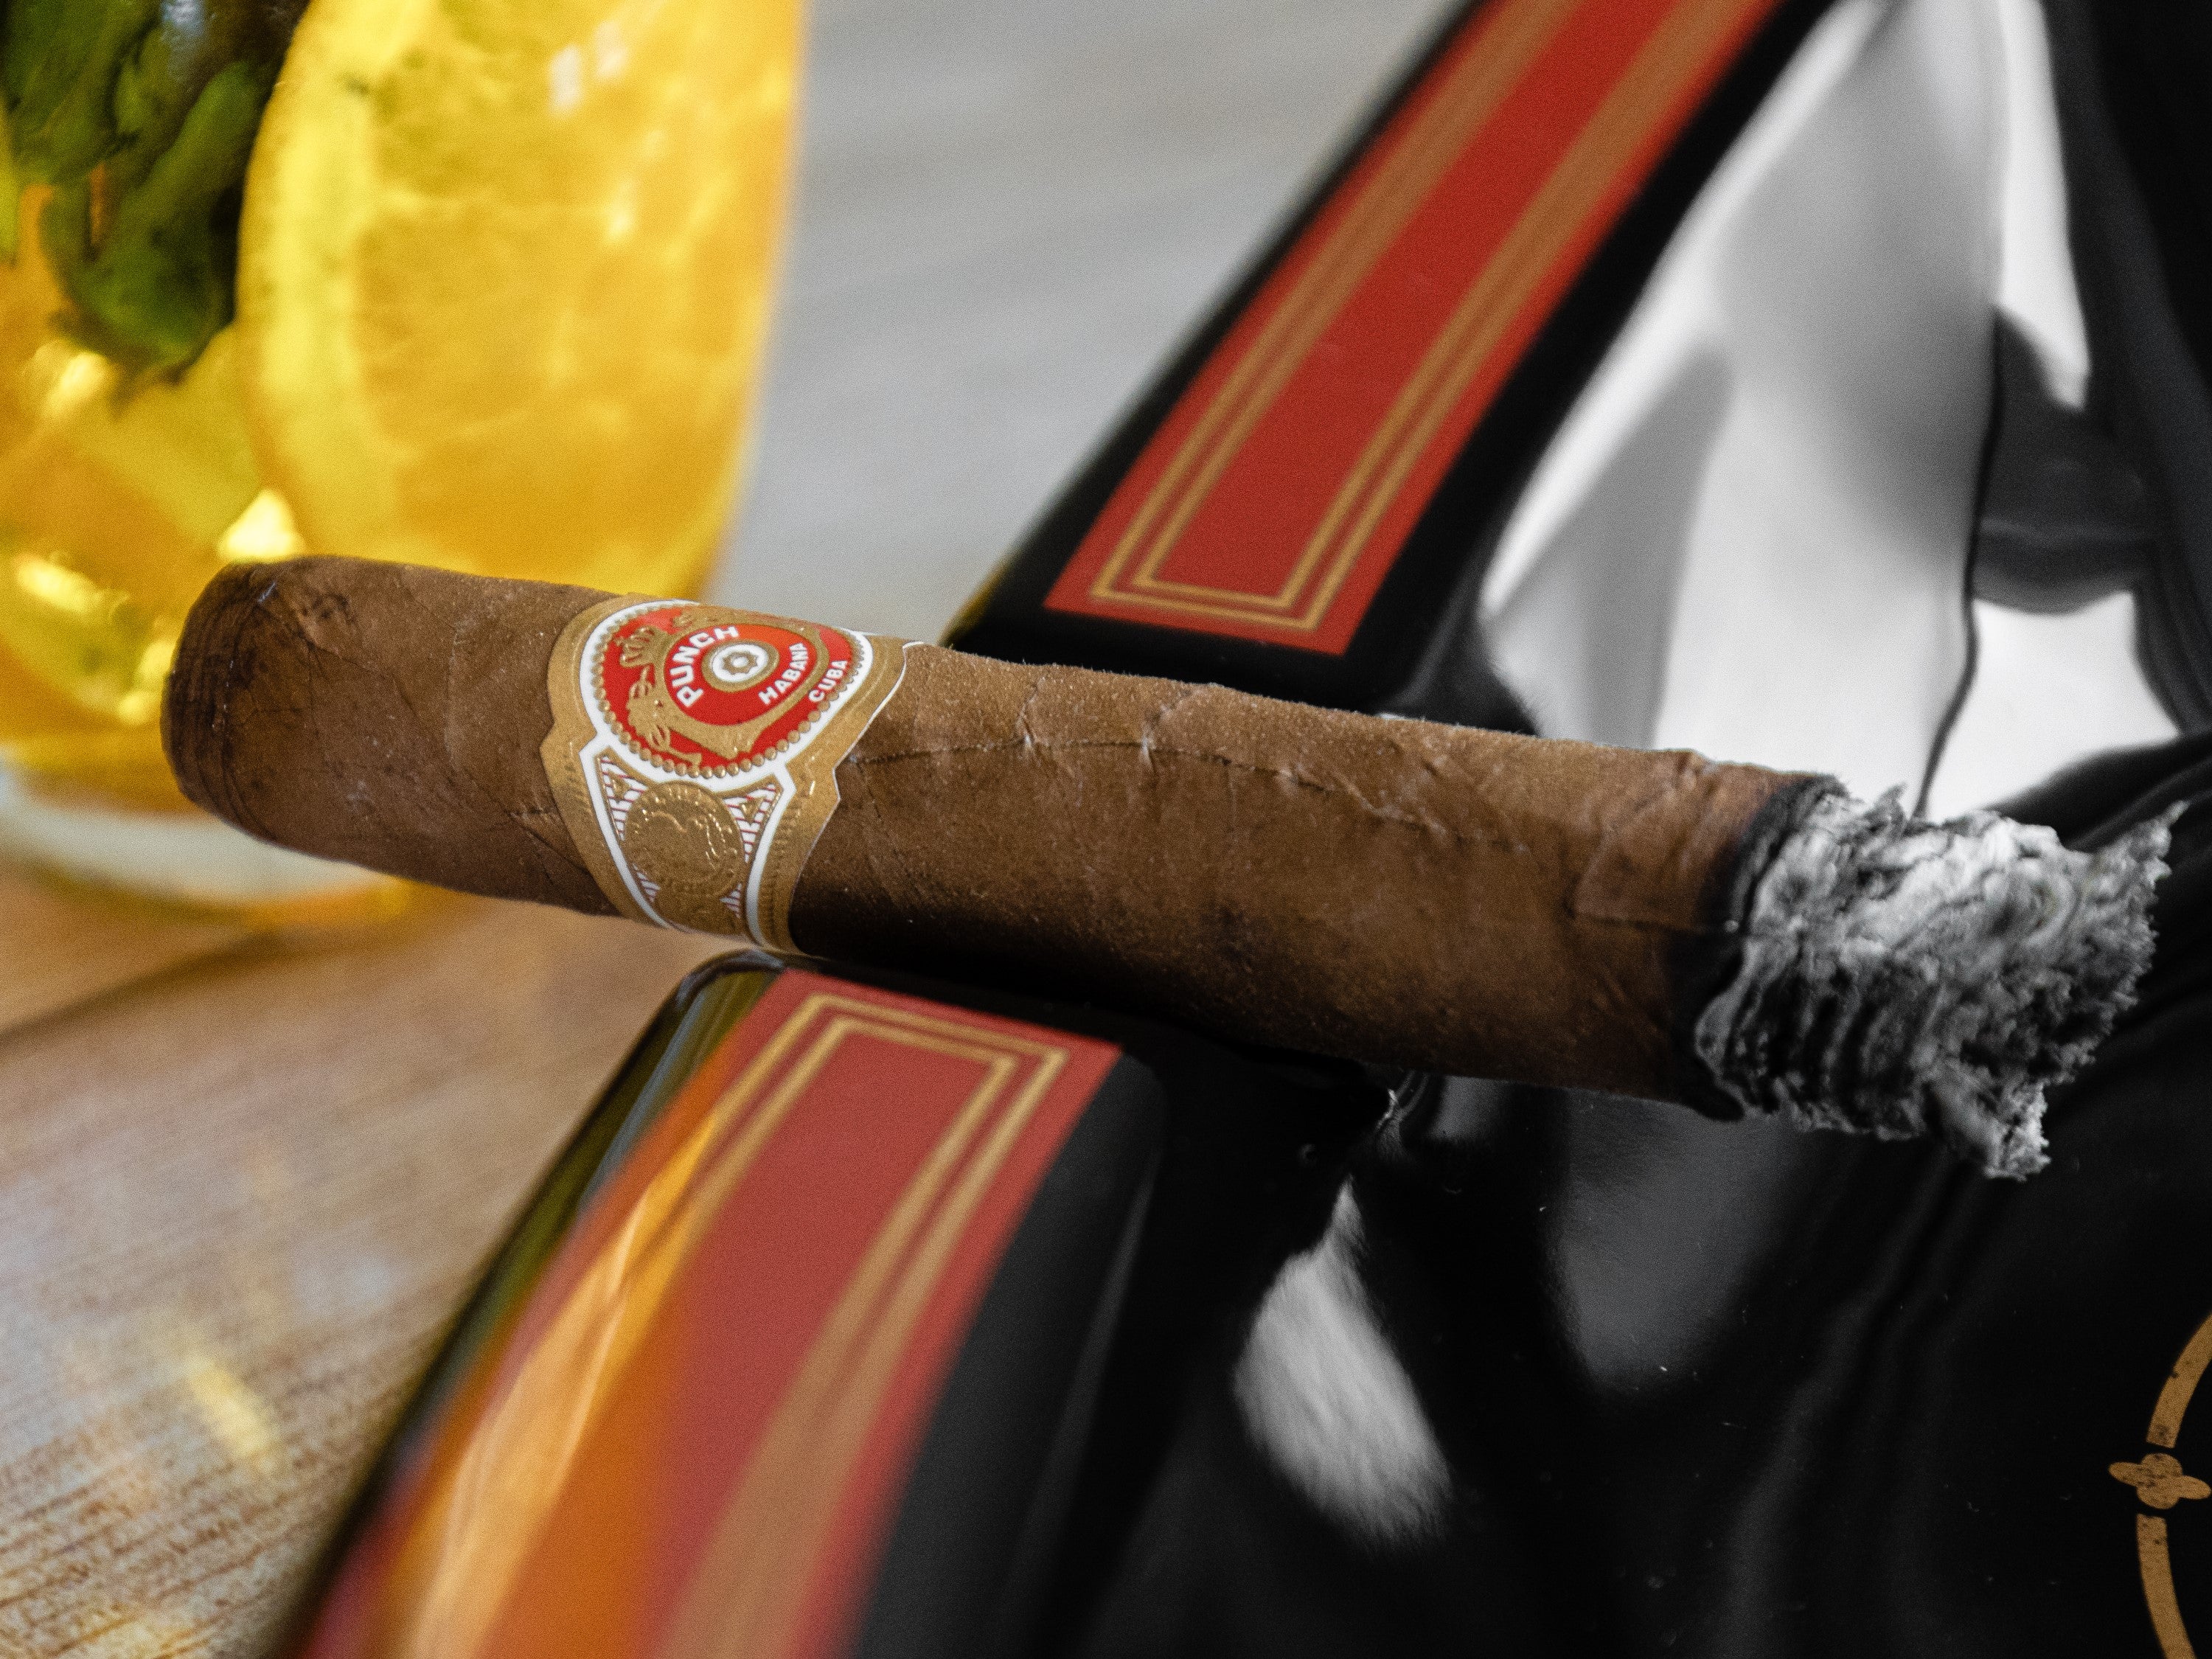 La ceniza se mantuvo hermosa hasta el final del cigarro cubano Punch Coronations.